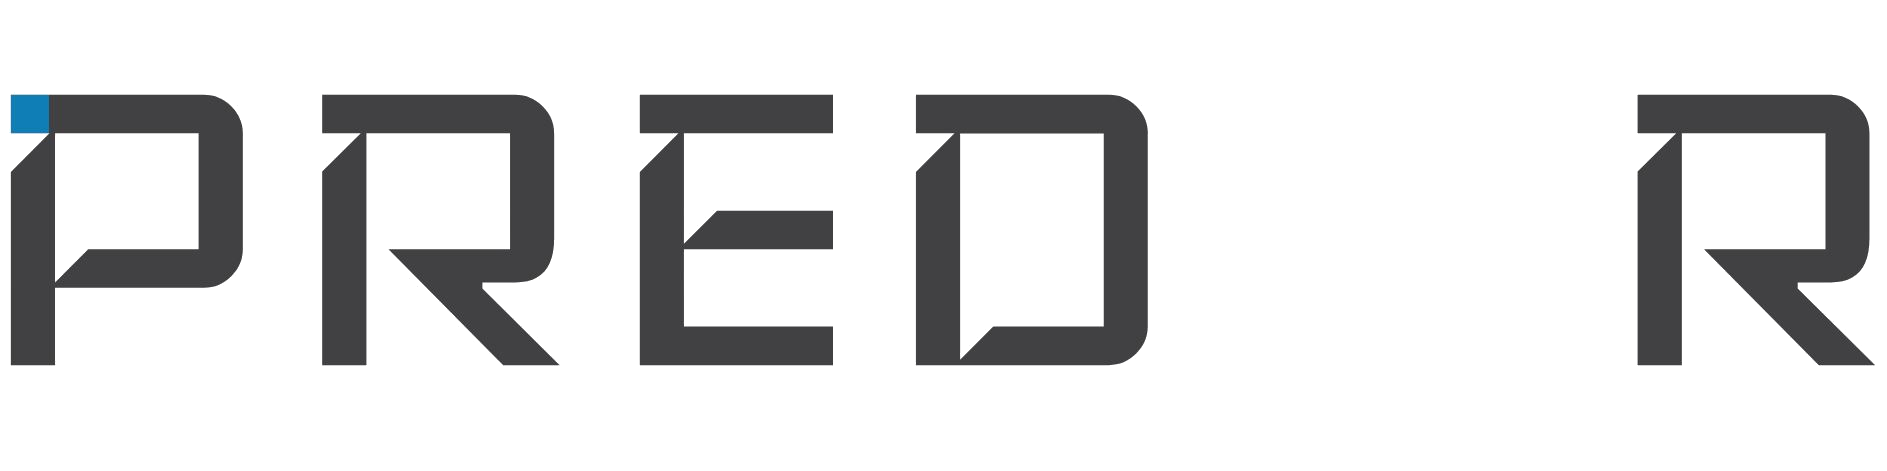 Predor logo